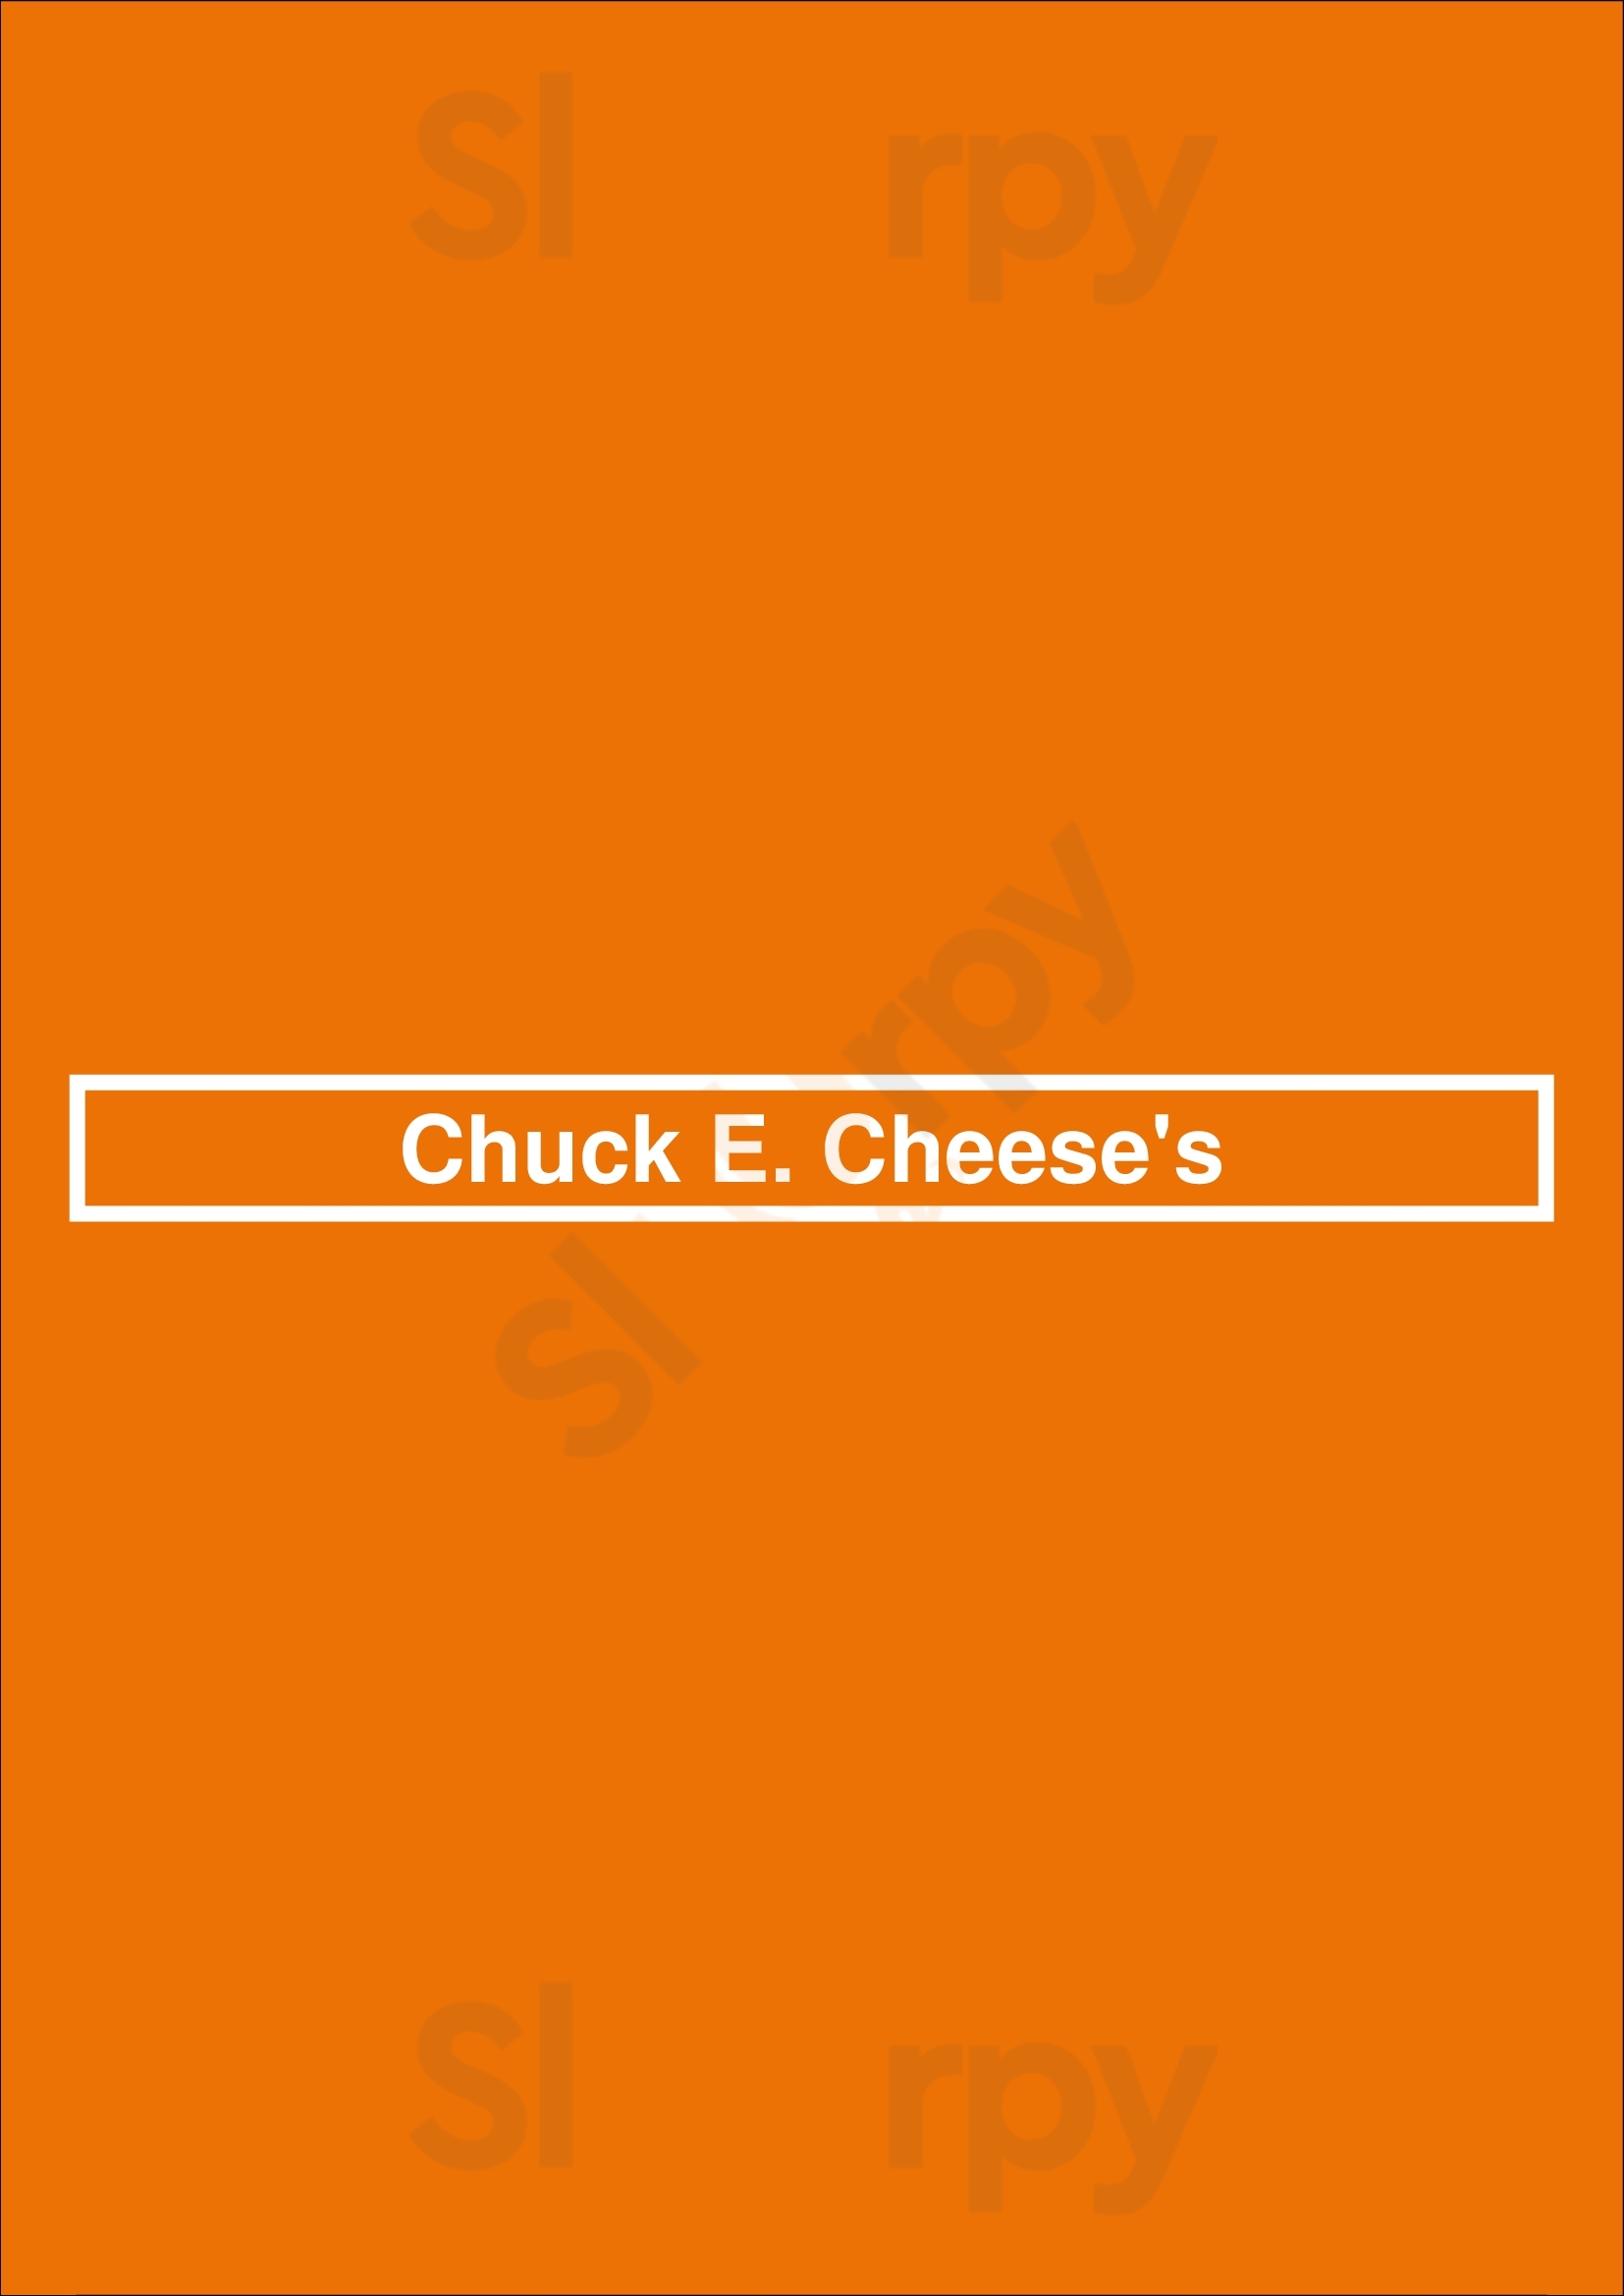 Chuck E. Cheese Louisville Menu - 1